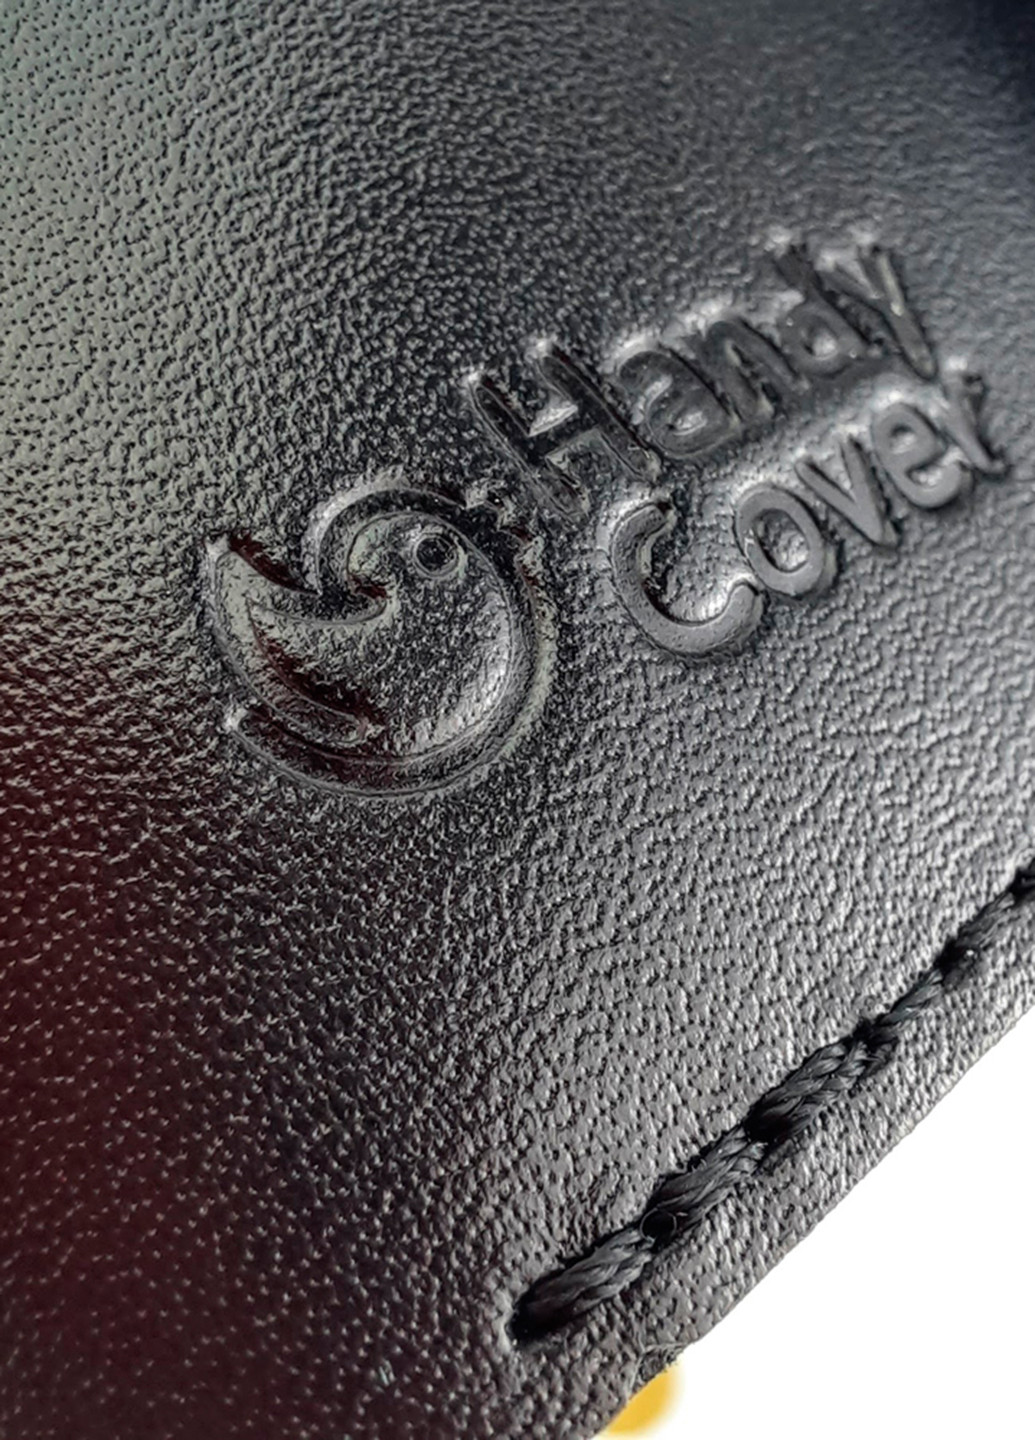 Женский кожаный кошелек маленький на кнопке HC0062 черный HandyCover однотонный чёрный деловой